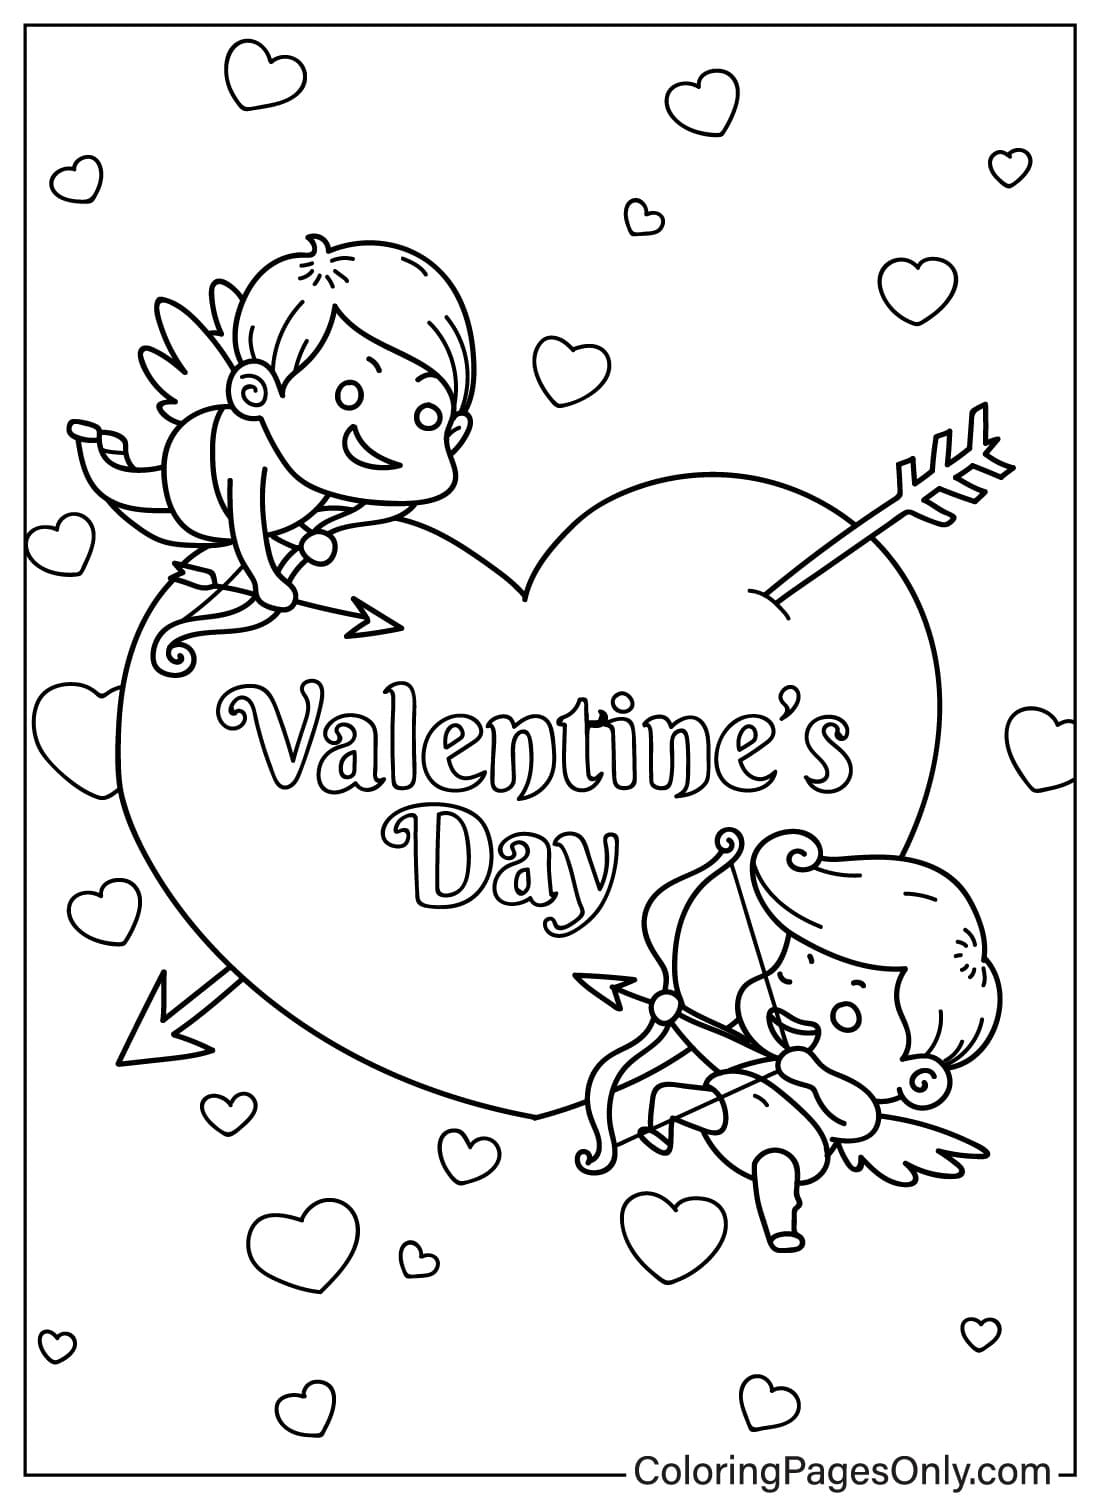 Página para colorear del Día de San Valentín de Cupido de Cupido